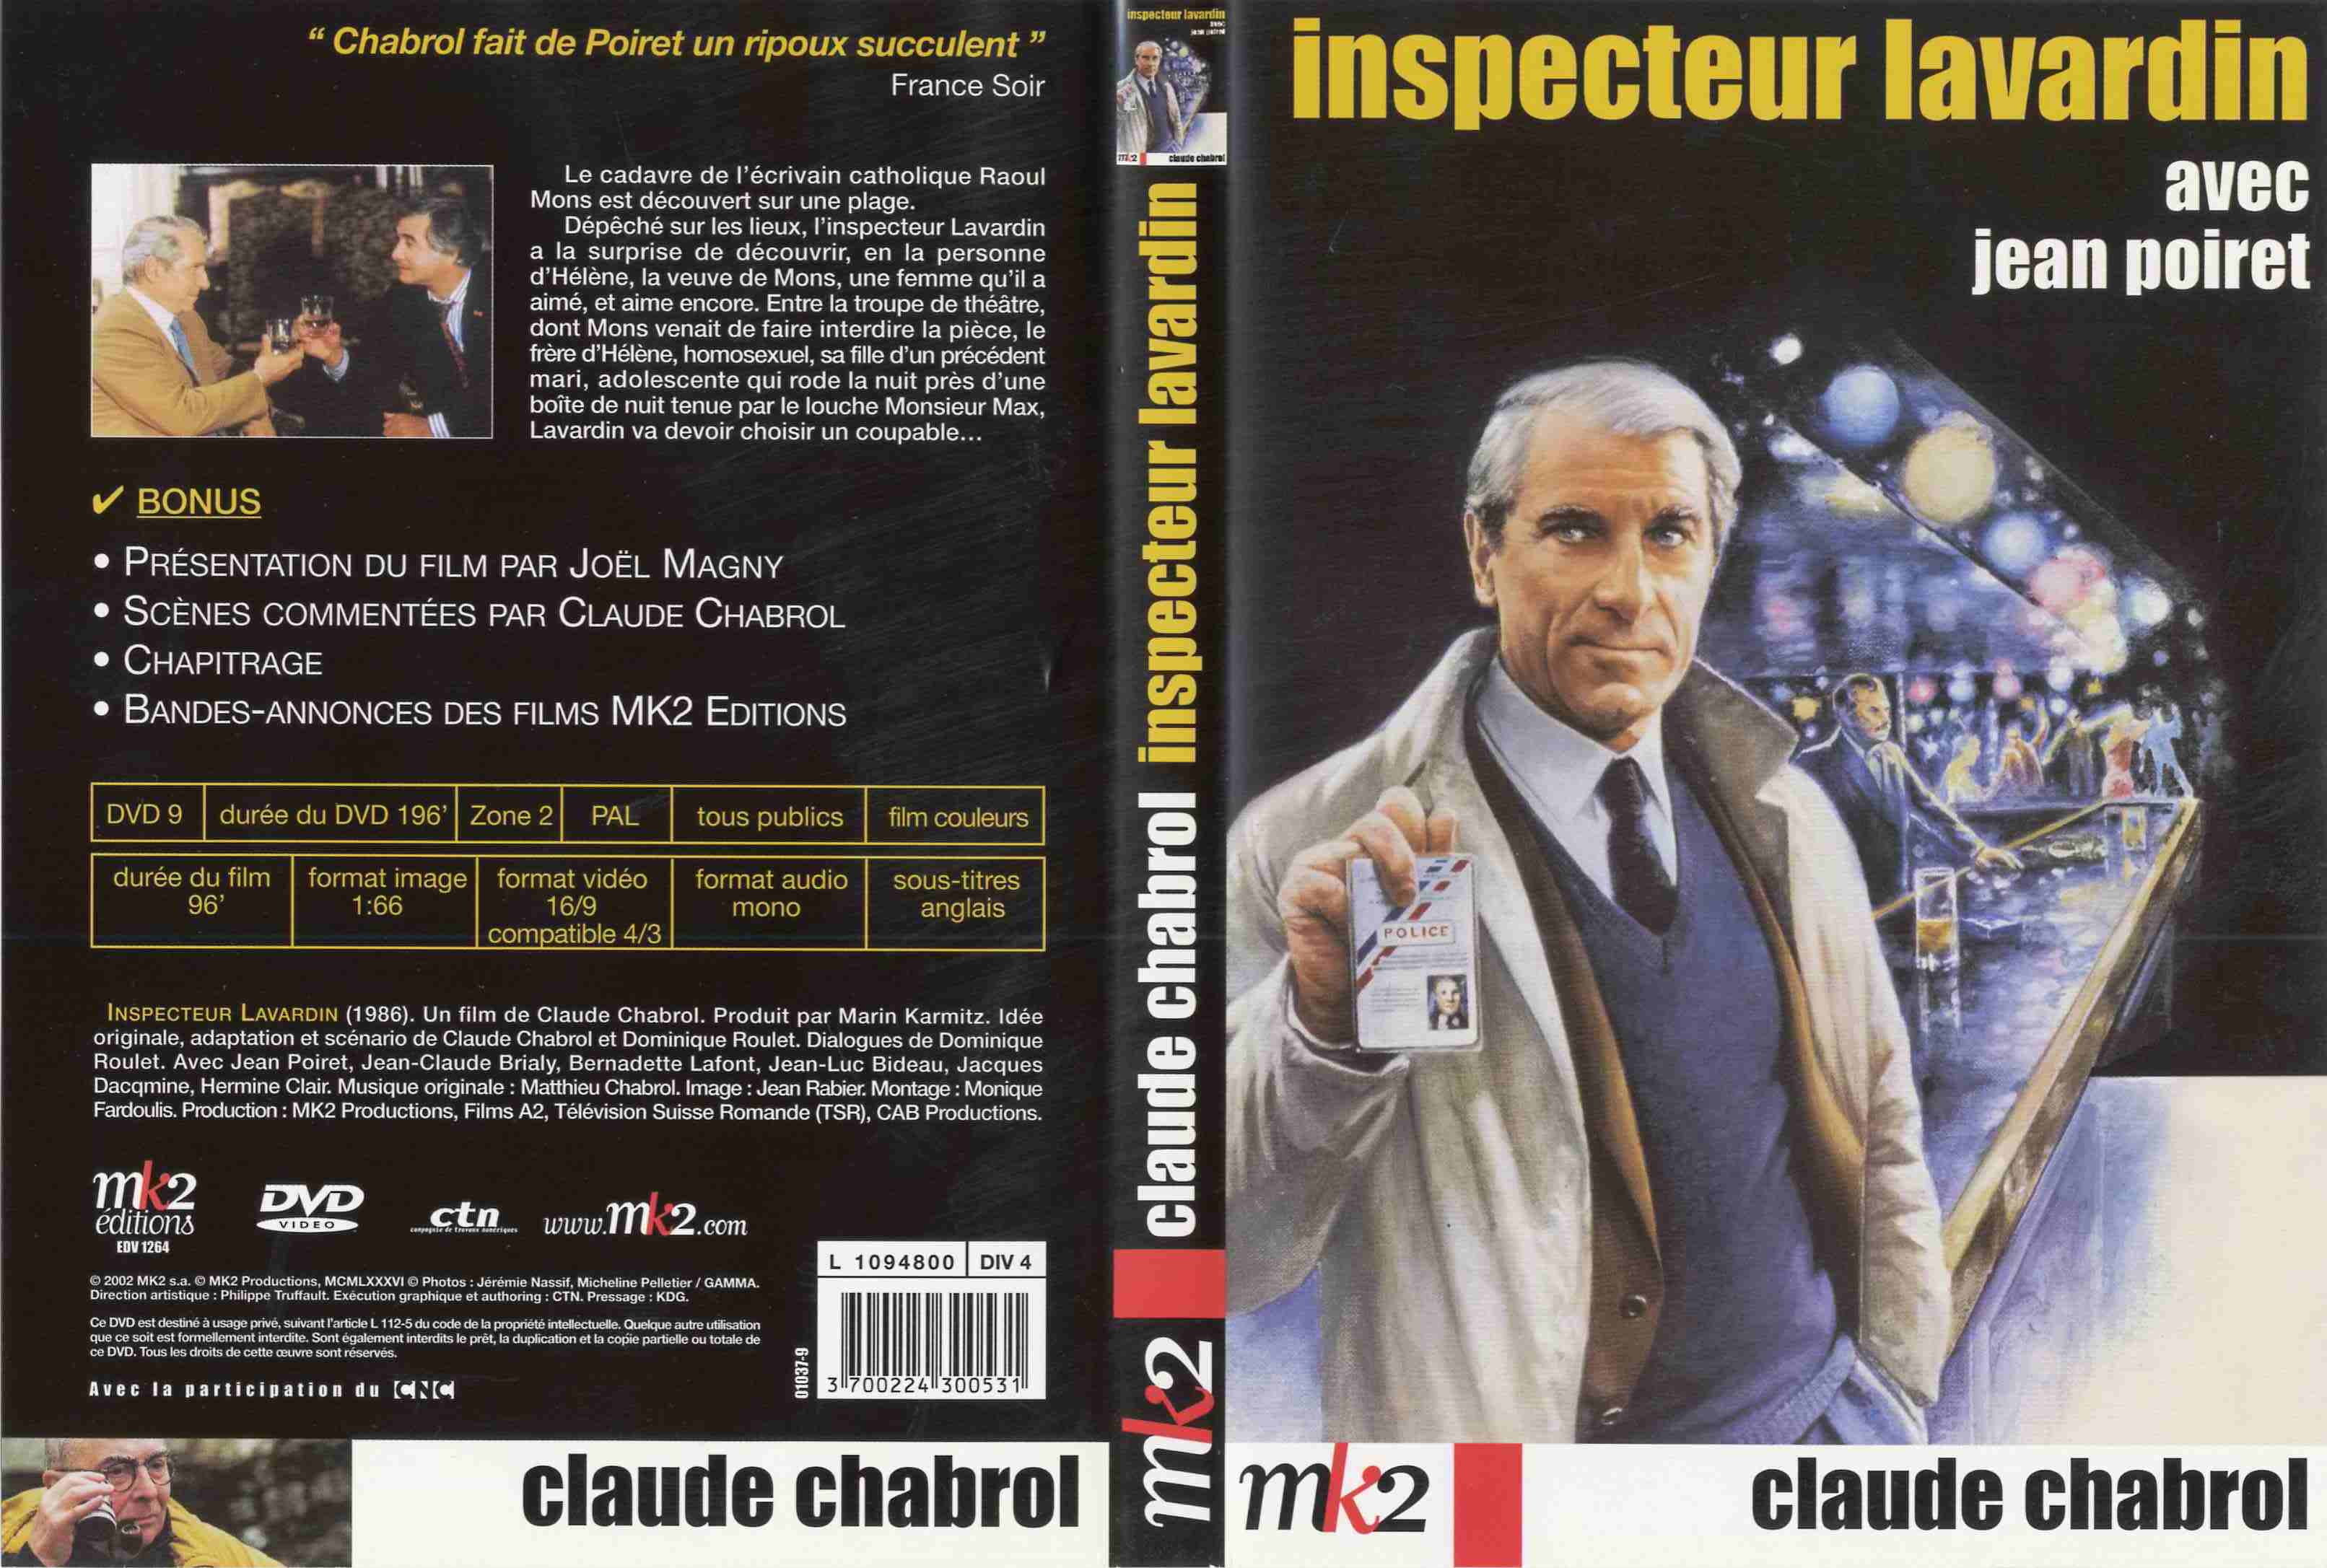 Jaquette DVD Inspecteur Lavardin